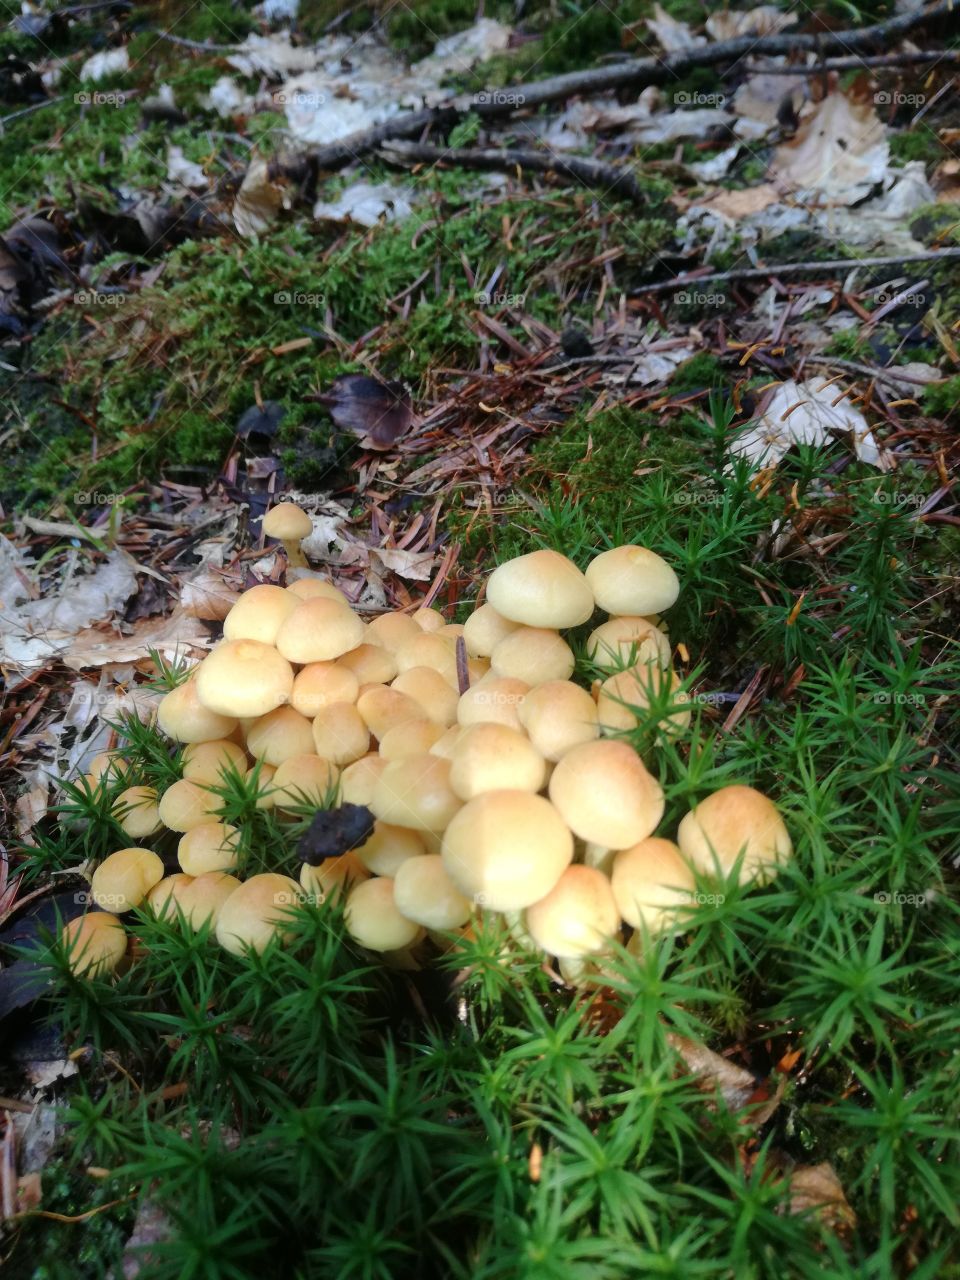 mushrooms in the autumn